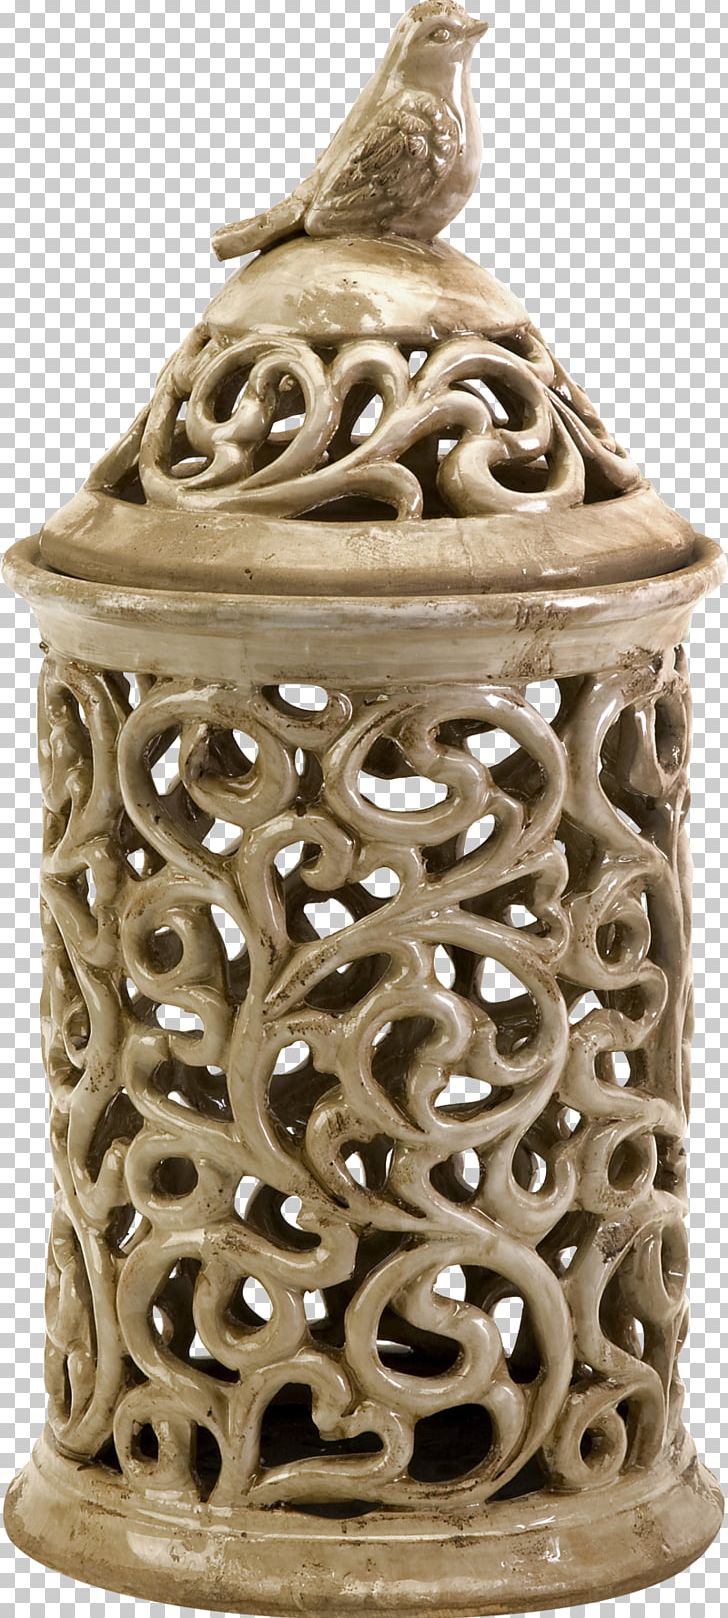 Ceramic Vase Artifact Bank PNG, Clipart, Advertising, Artifact, Bank, Bird, Carving Free PNG Download